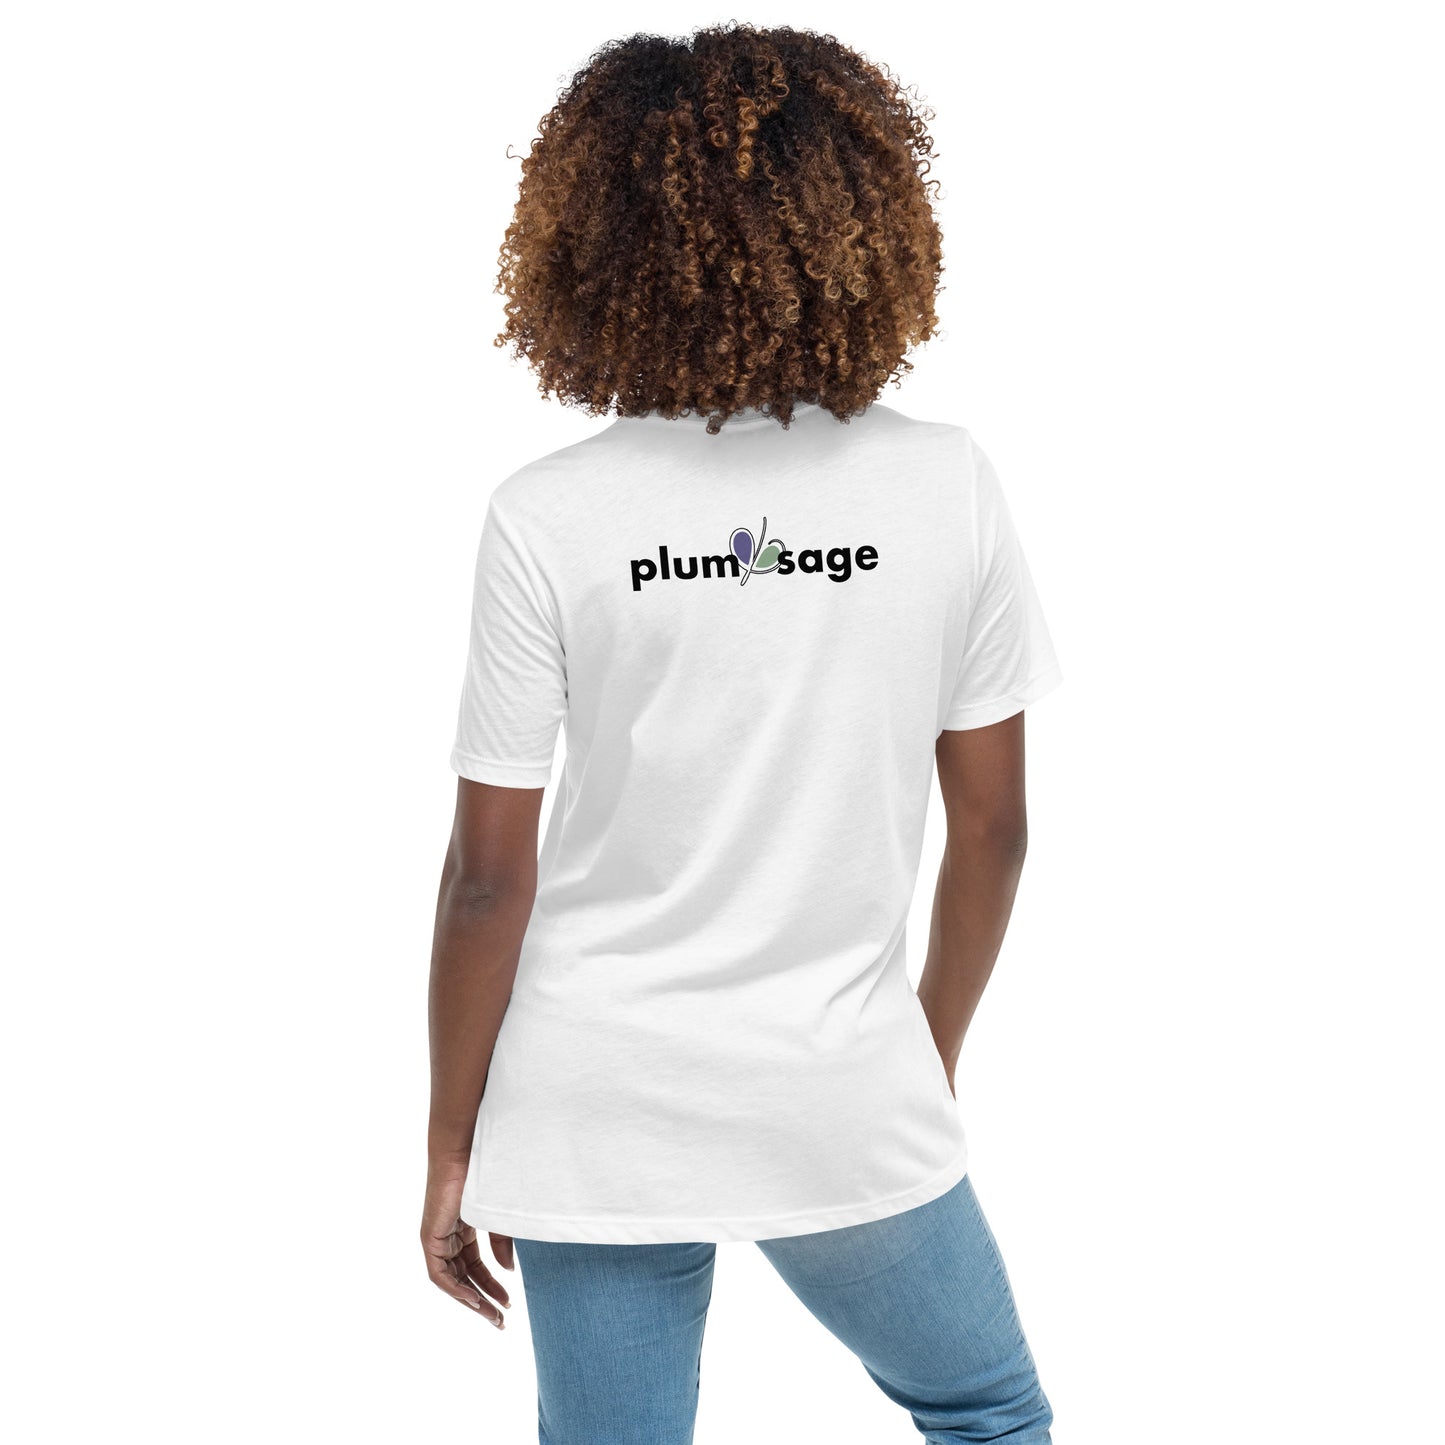 I'm a Plum Women's Relaxed T-Shirt